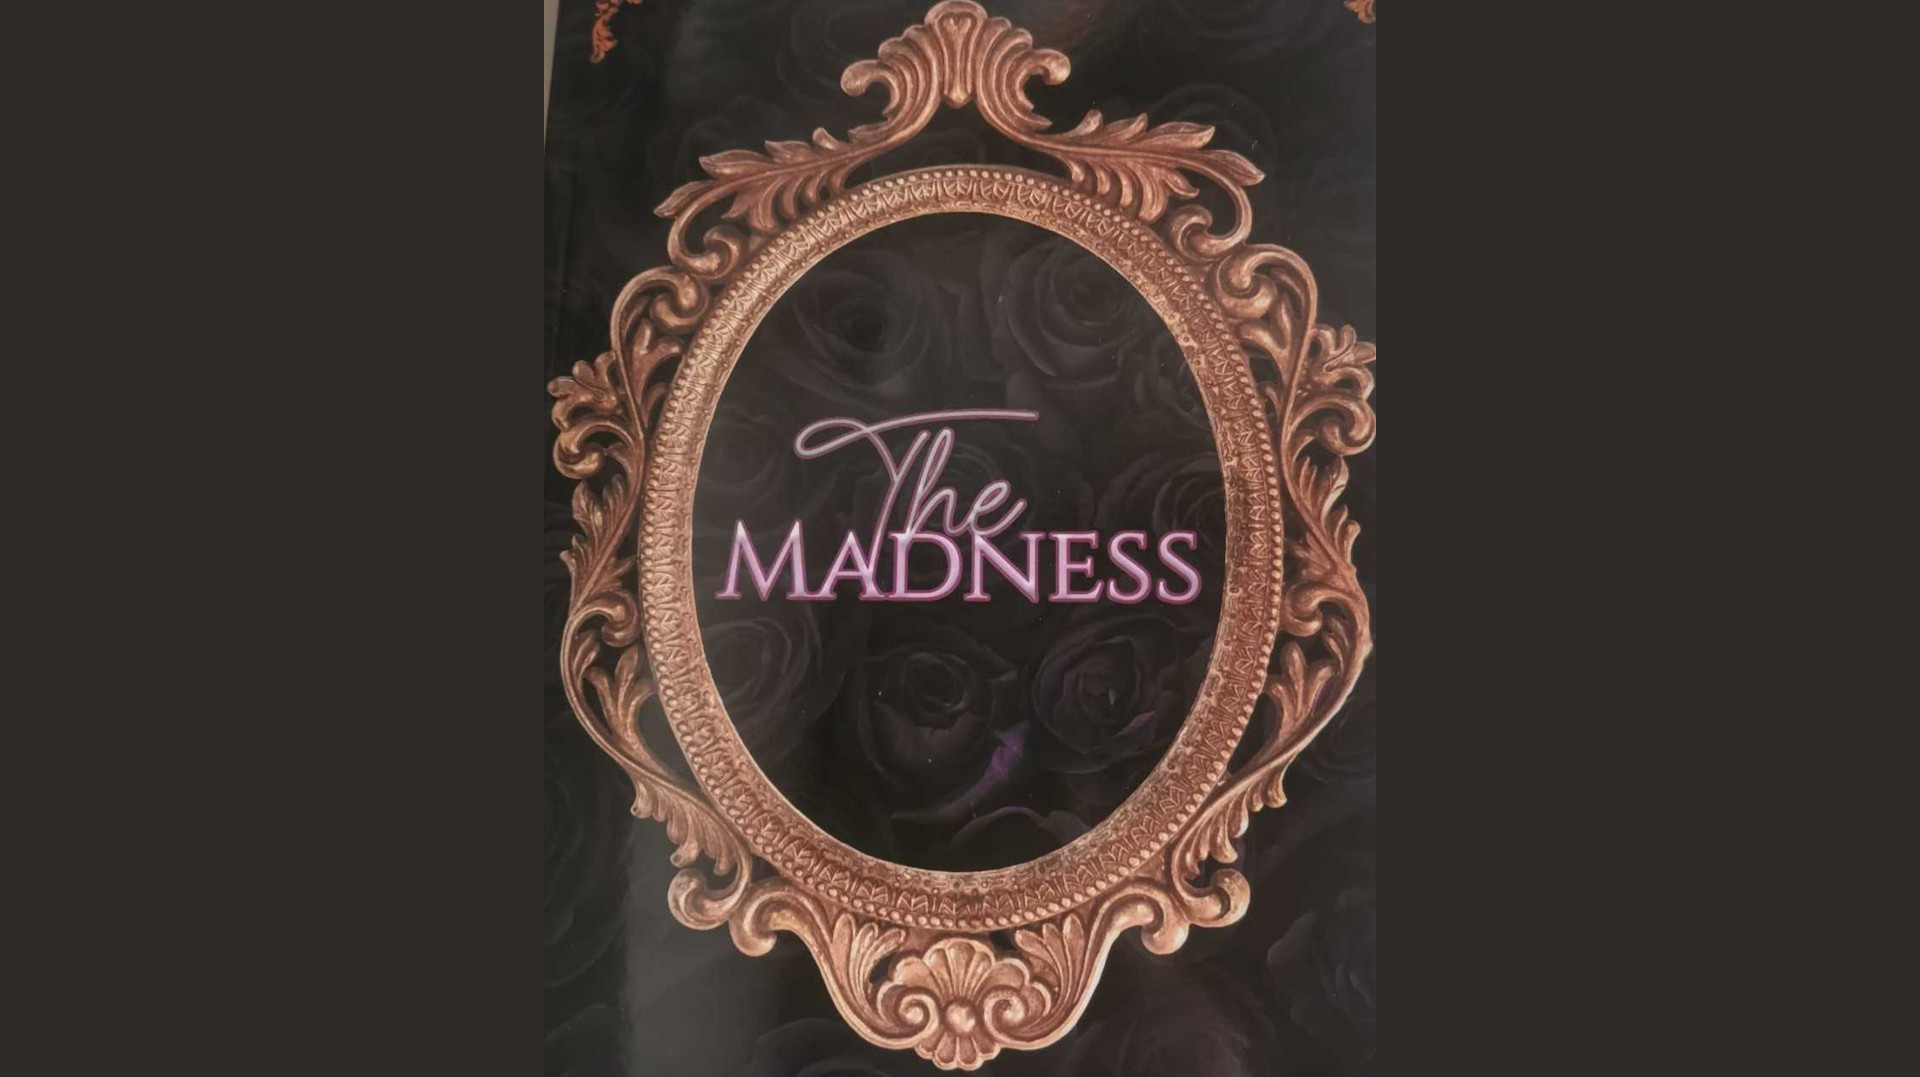 Presentació del llibre “Madness”